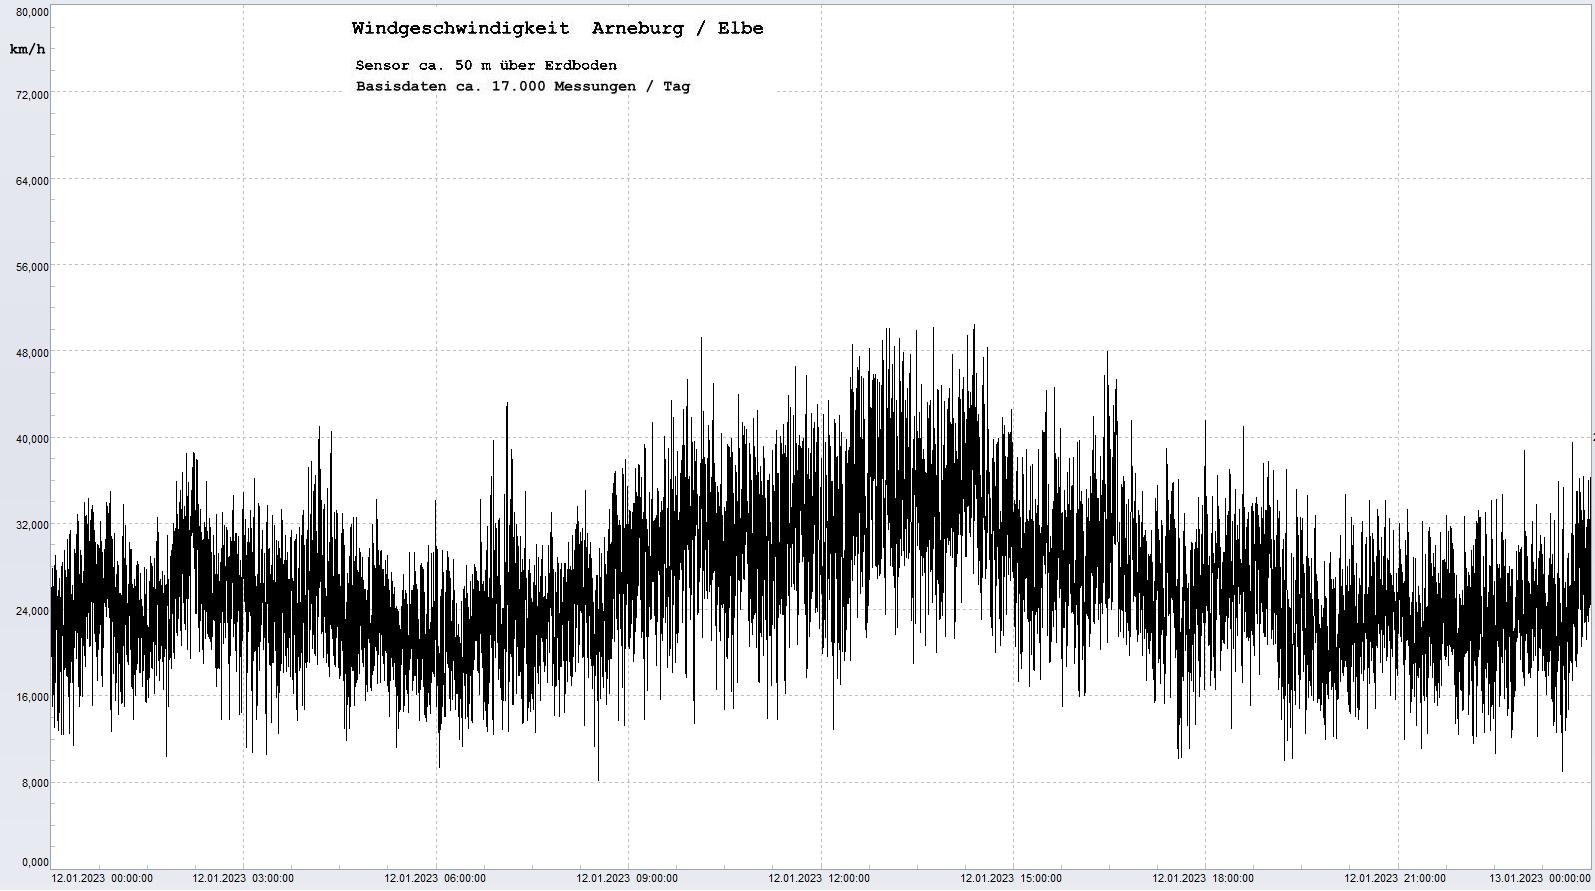 Arneburg Tages-Diagramm Winddaten, 12.01.2023
  Diagramm, Sensor auf Gebäude, ca. 50 m über Erdboden, Basis: 5s-Aufzeichnung